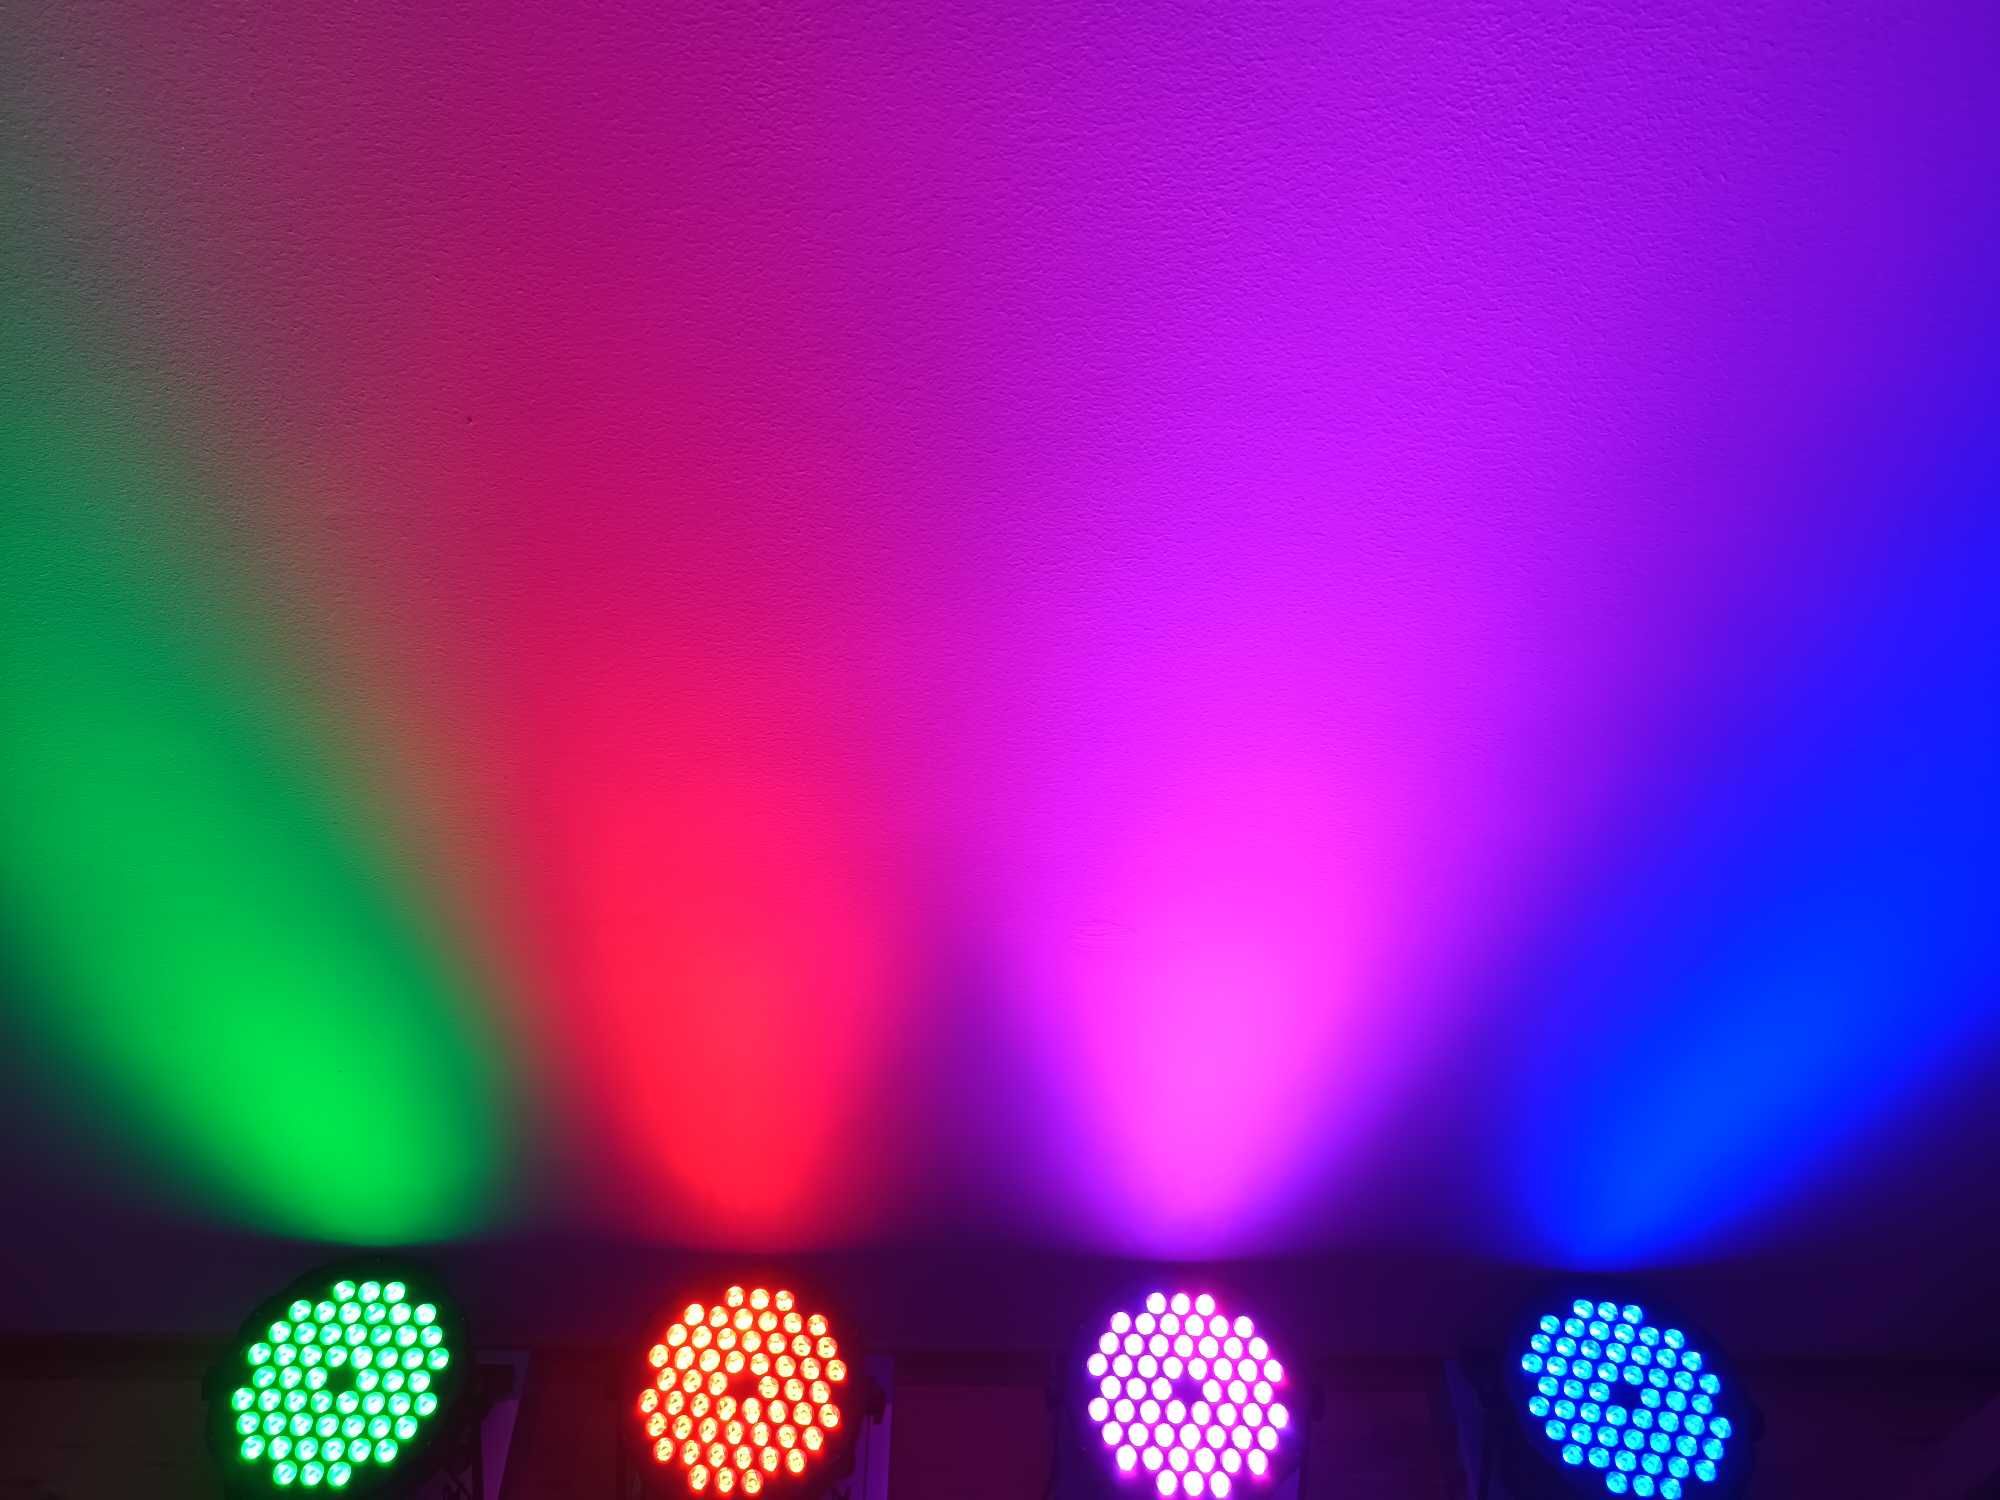 Orga de lumini Dj Club Party *Lumini Ambientale Nunta*Joc disco culori